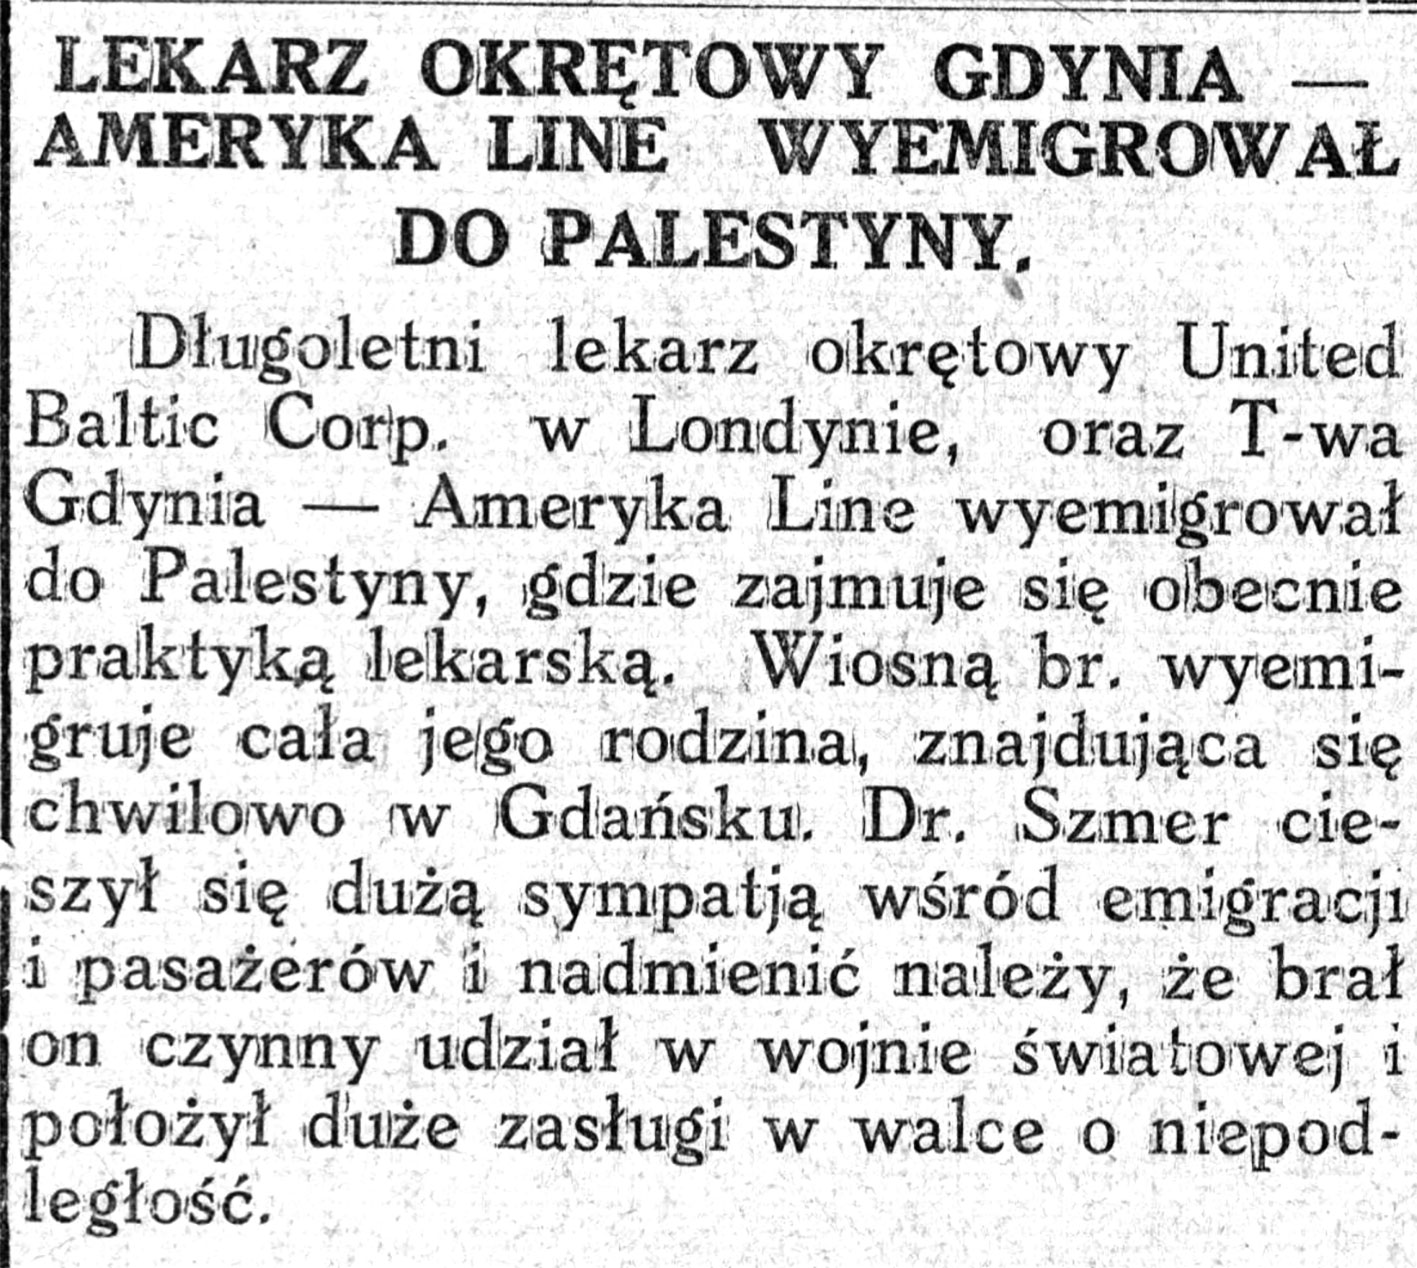 Lekarz okrętowy Gdynia Ameryka Line wyemigrował do Palestyny // Nowa Epoka. - 1933, nr 6/8, s. 4